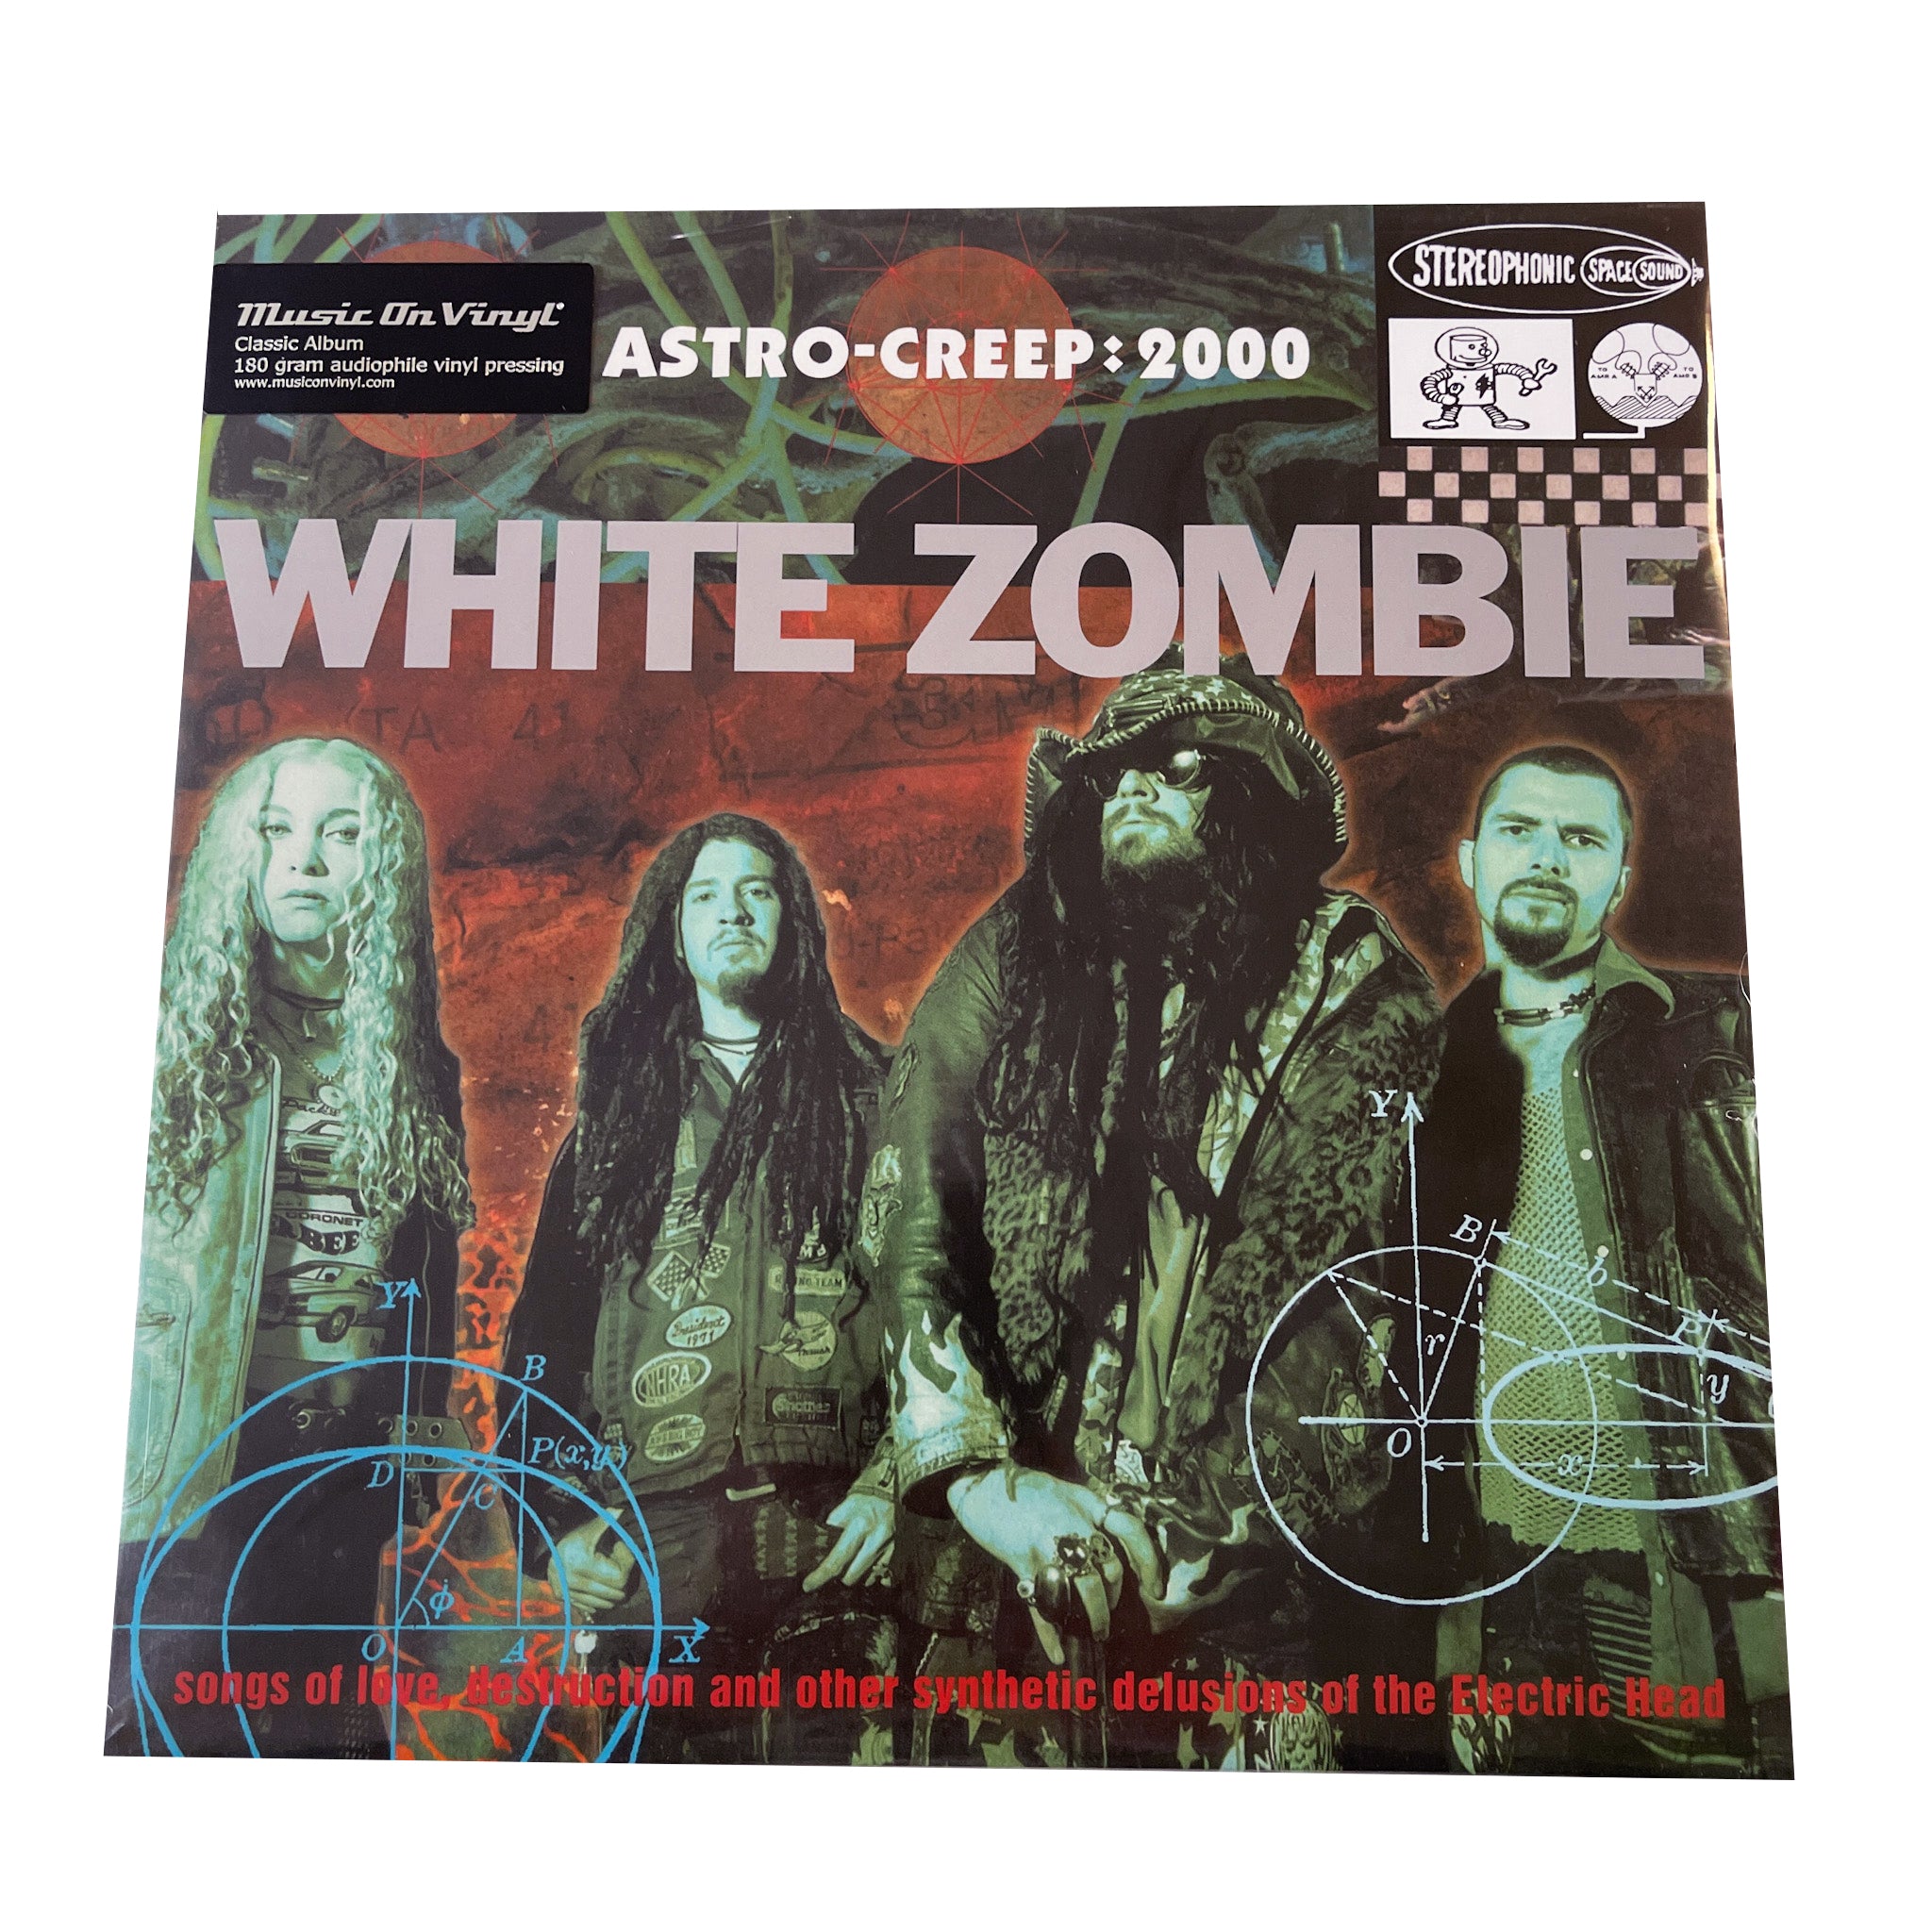 White Zombie: Astro-Creep 2000 12